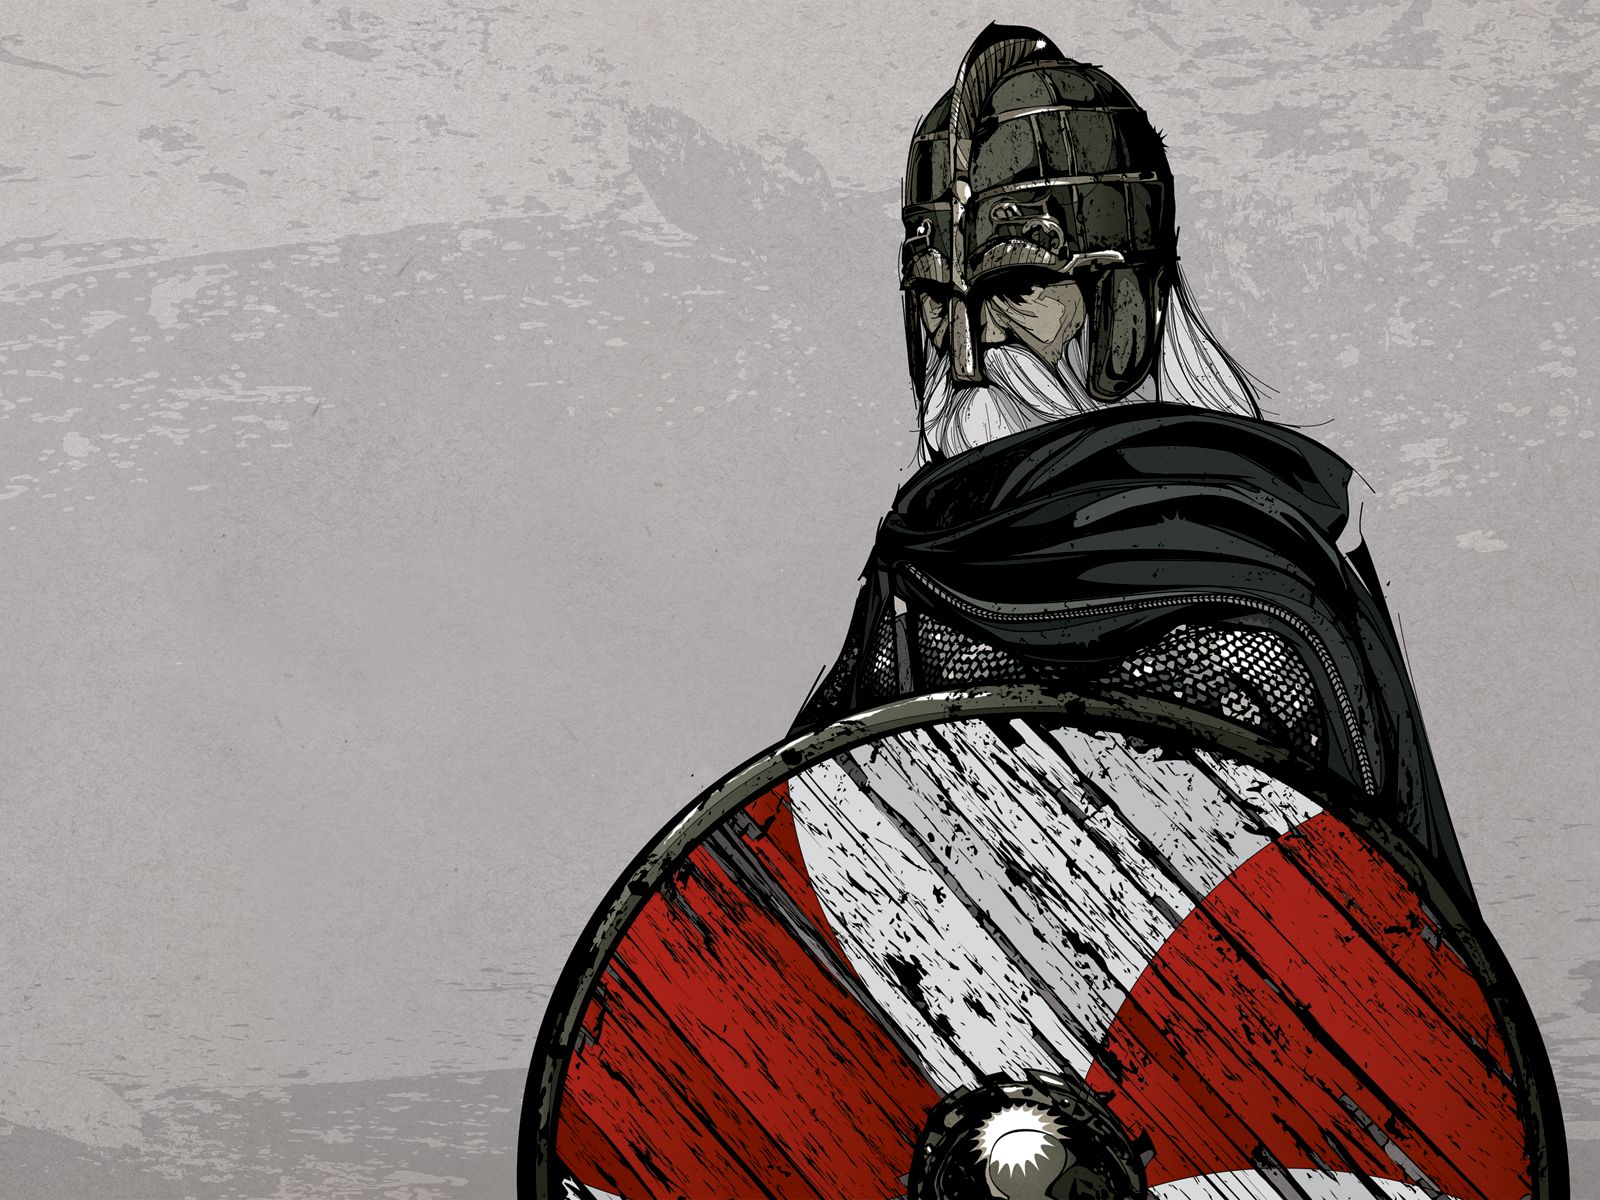 Viking Picture. Image viking, Art viking, Illustration